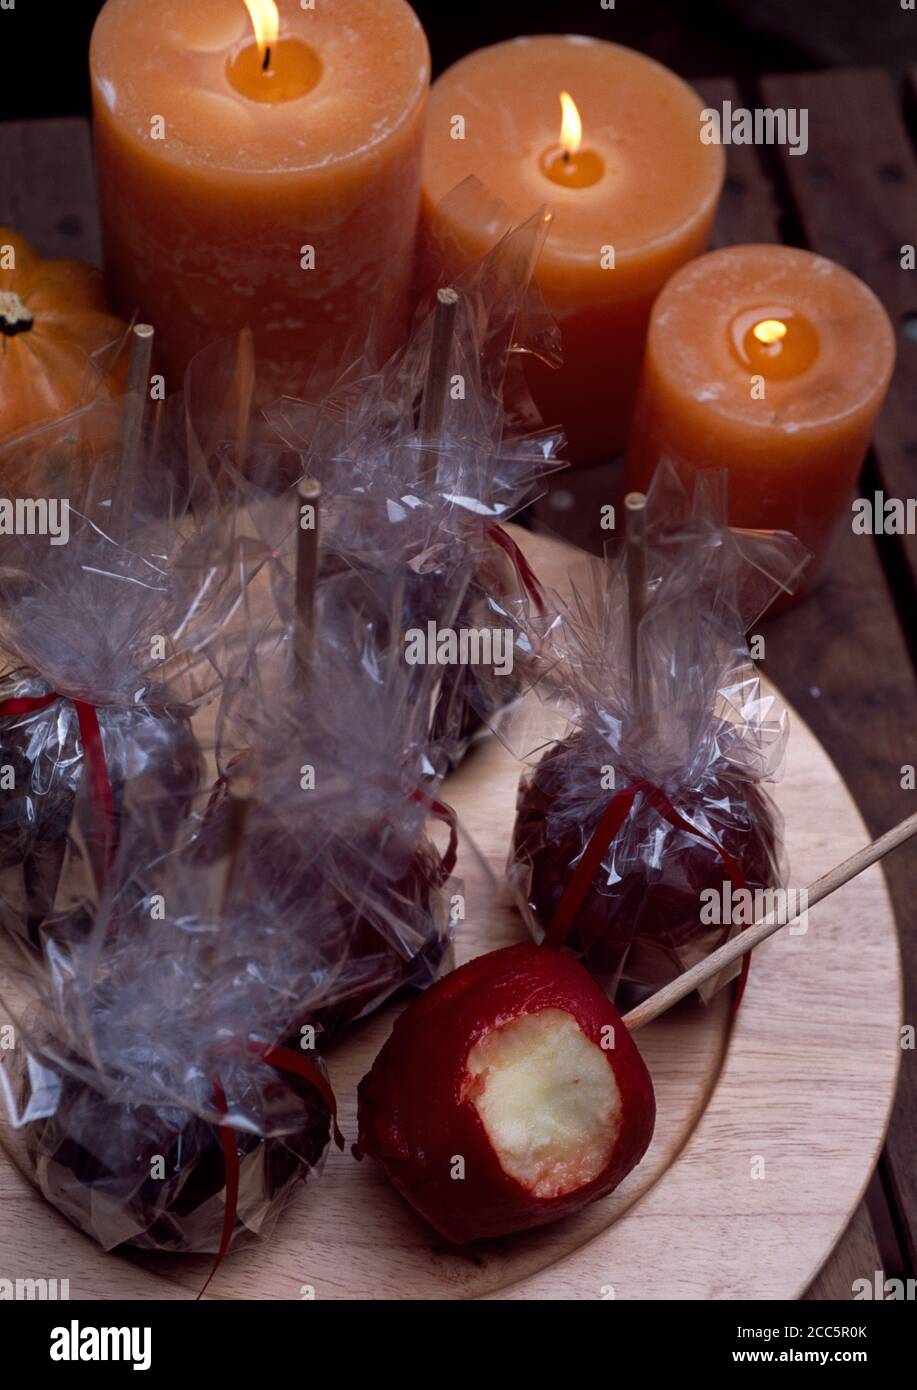 Manzanas de toffee envueltas en celephane para la noche de la hoguera o halloween Foto de stock